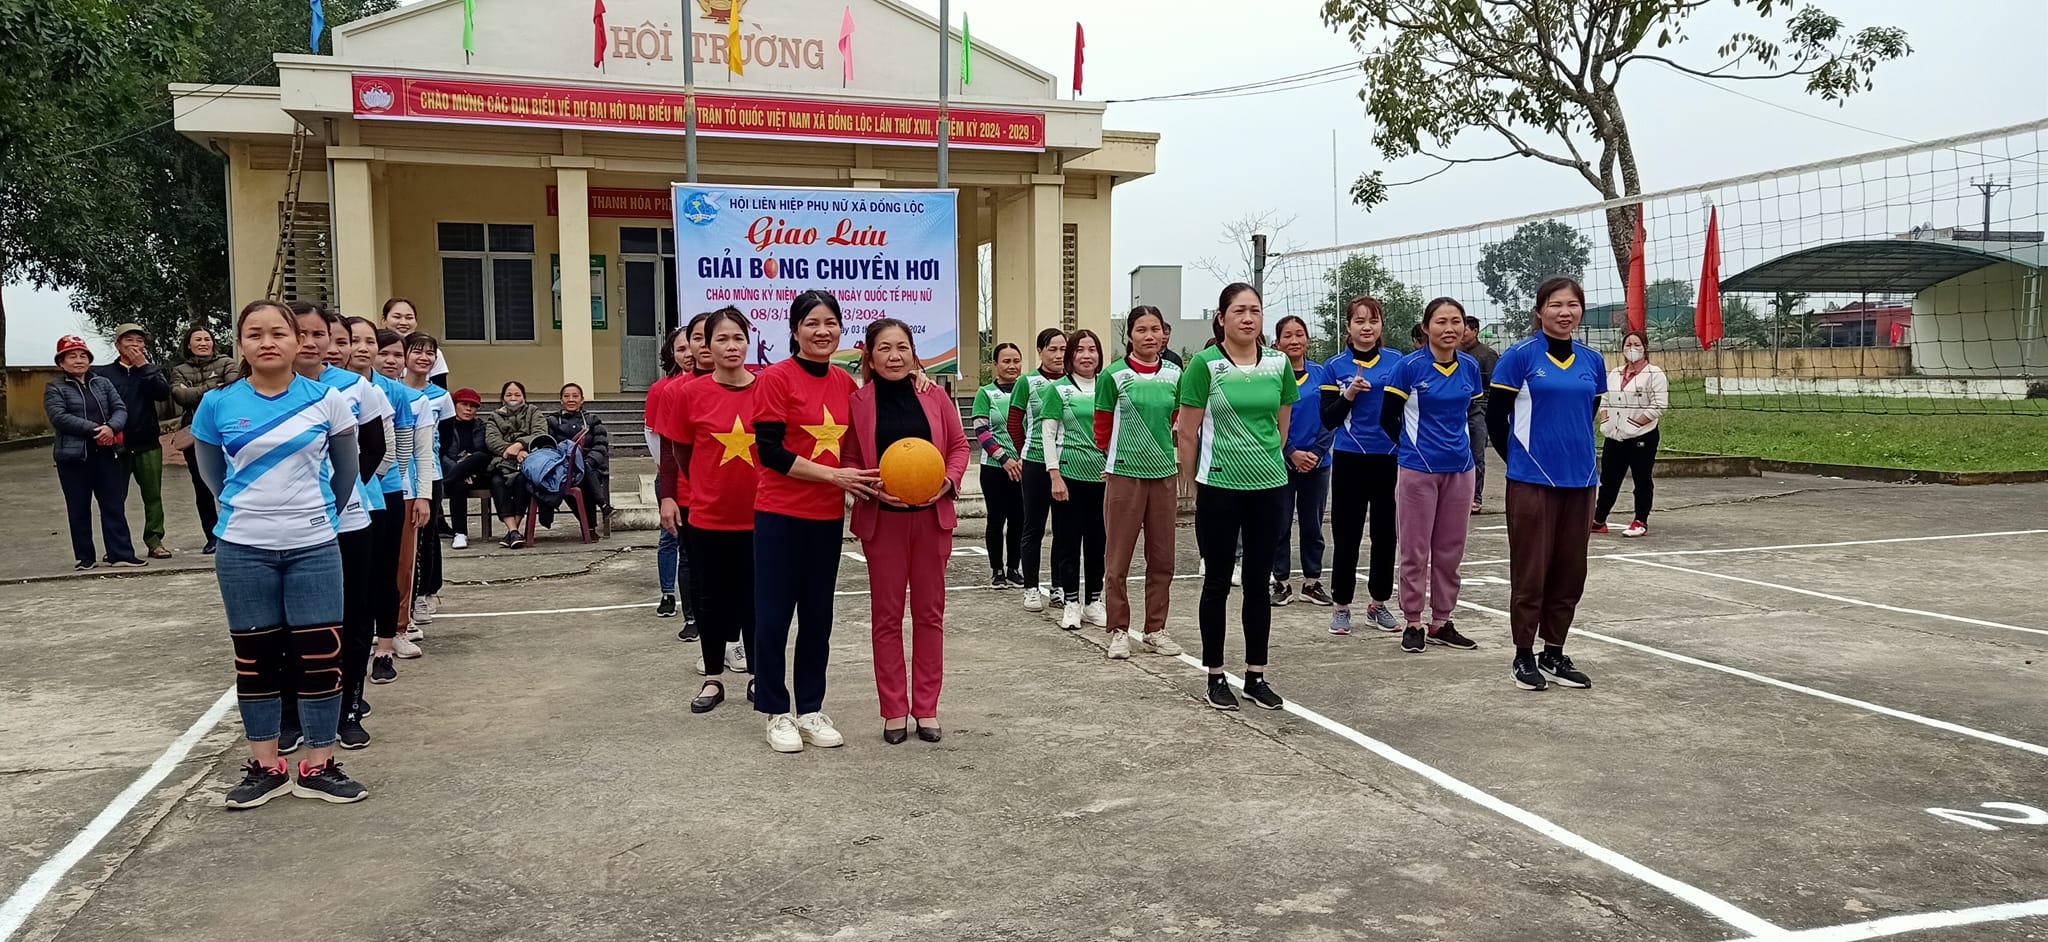 Hội Liên hiệp phụ nữ xã Đồng Lộc, tổ chức thành công Giải bóng chuyền hơi, và tổ chức các hoạt động chào mừng kỷ niệm 114 năm, ngày Quốc tế phụ nữ ngày 8 tháng 3